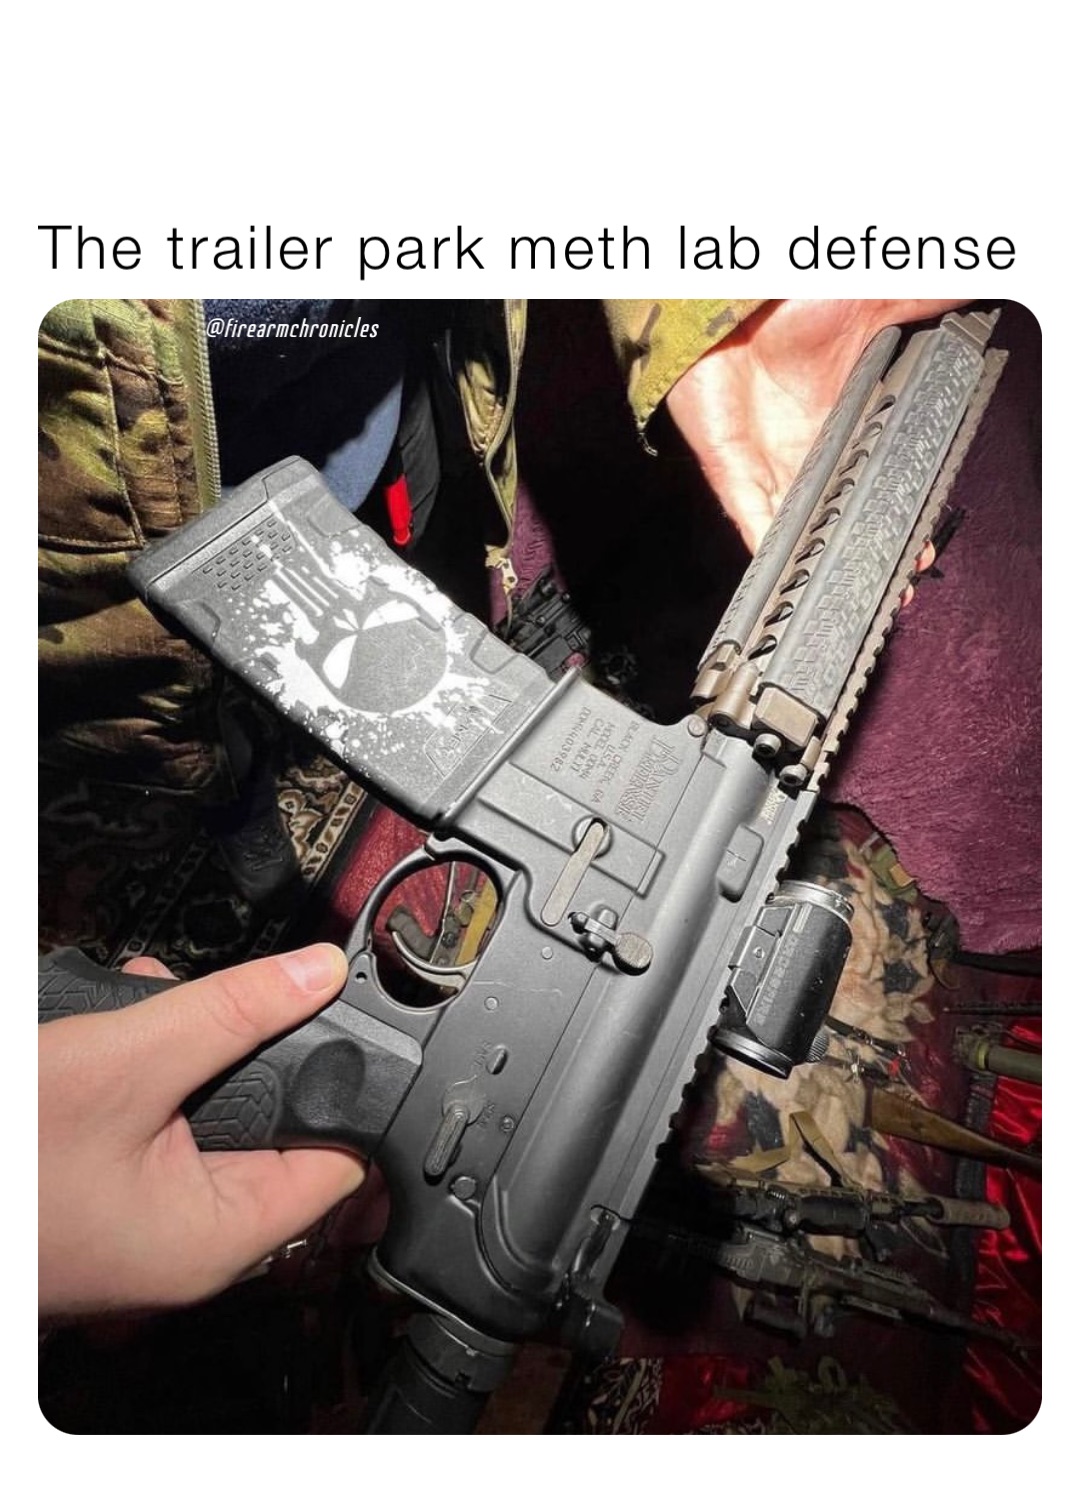 The trailer park meth lab defense